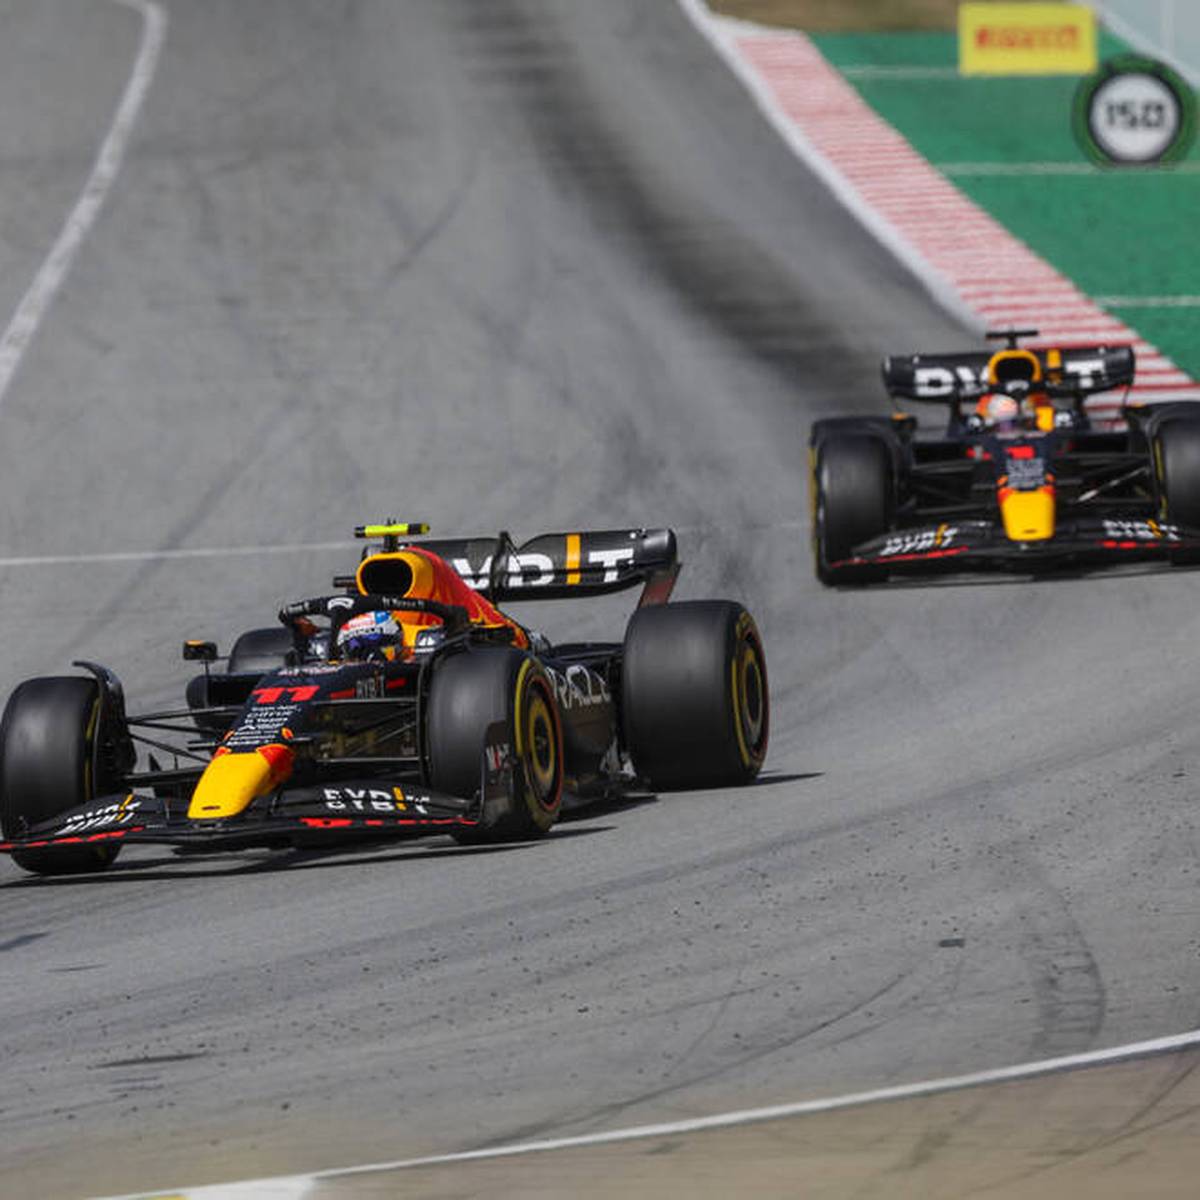 Beim Großen Preis von Spanien scheidet Charles Leclerc in Führung liegend aus. Nutznießer ist Max Verstappen, der die WM-Führung übernimmt. Schumacher und Vettel bleiben erneut ohne Punkte.